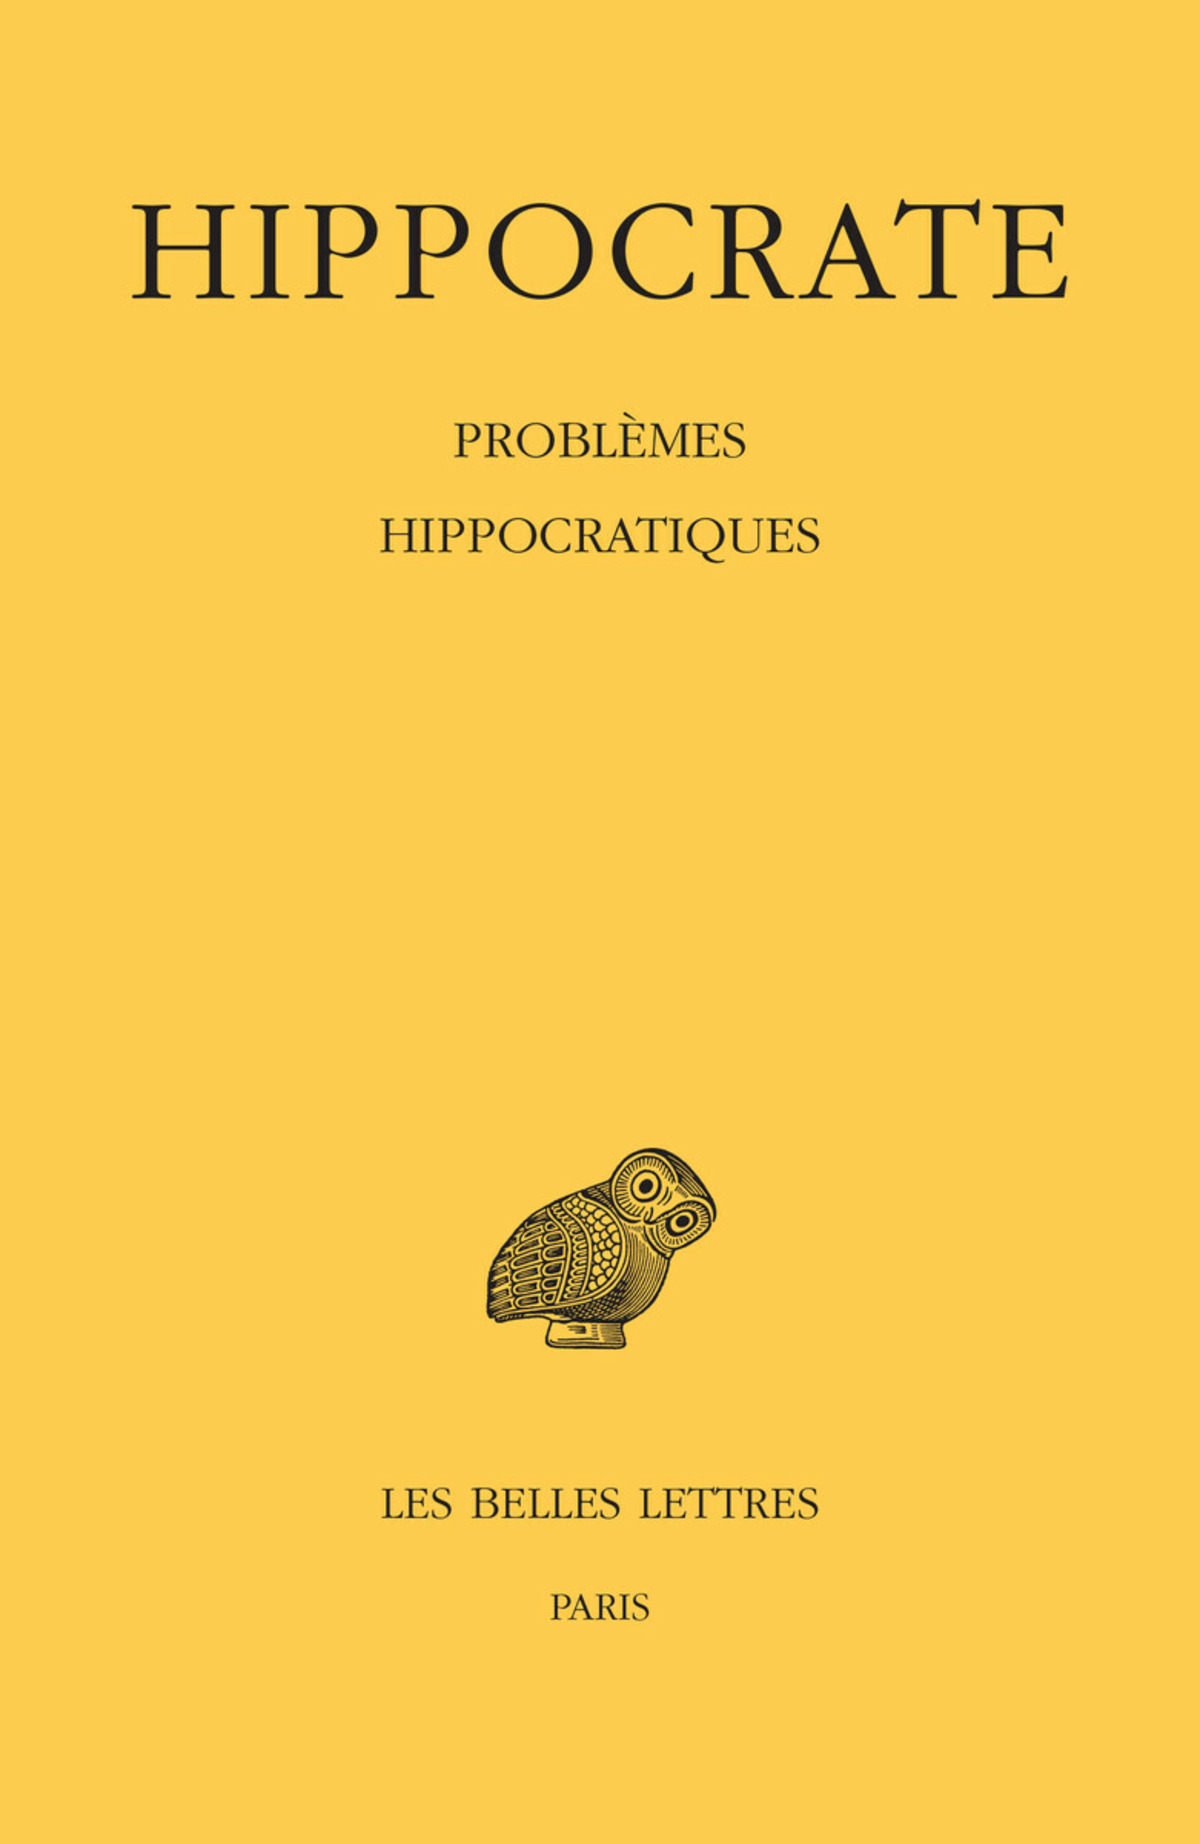 Tome XVI, Problèmes hippocratiques